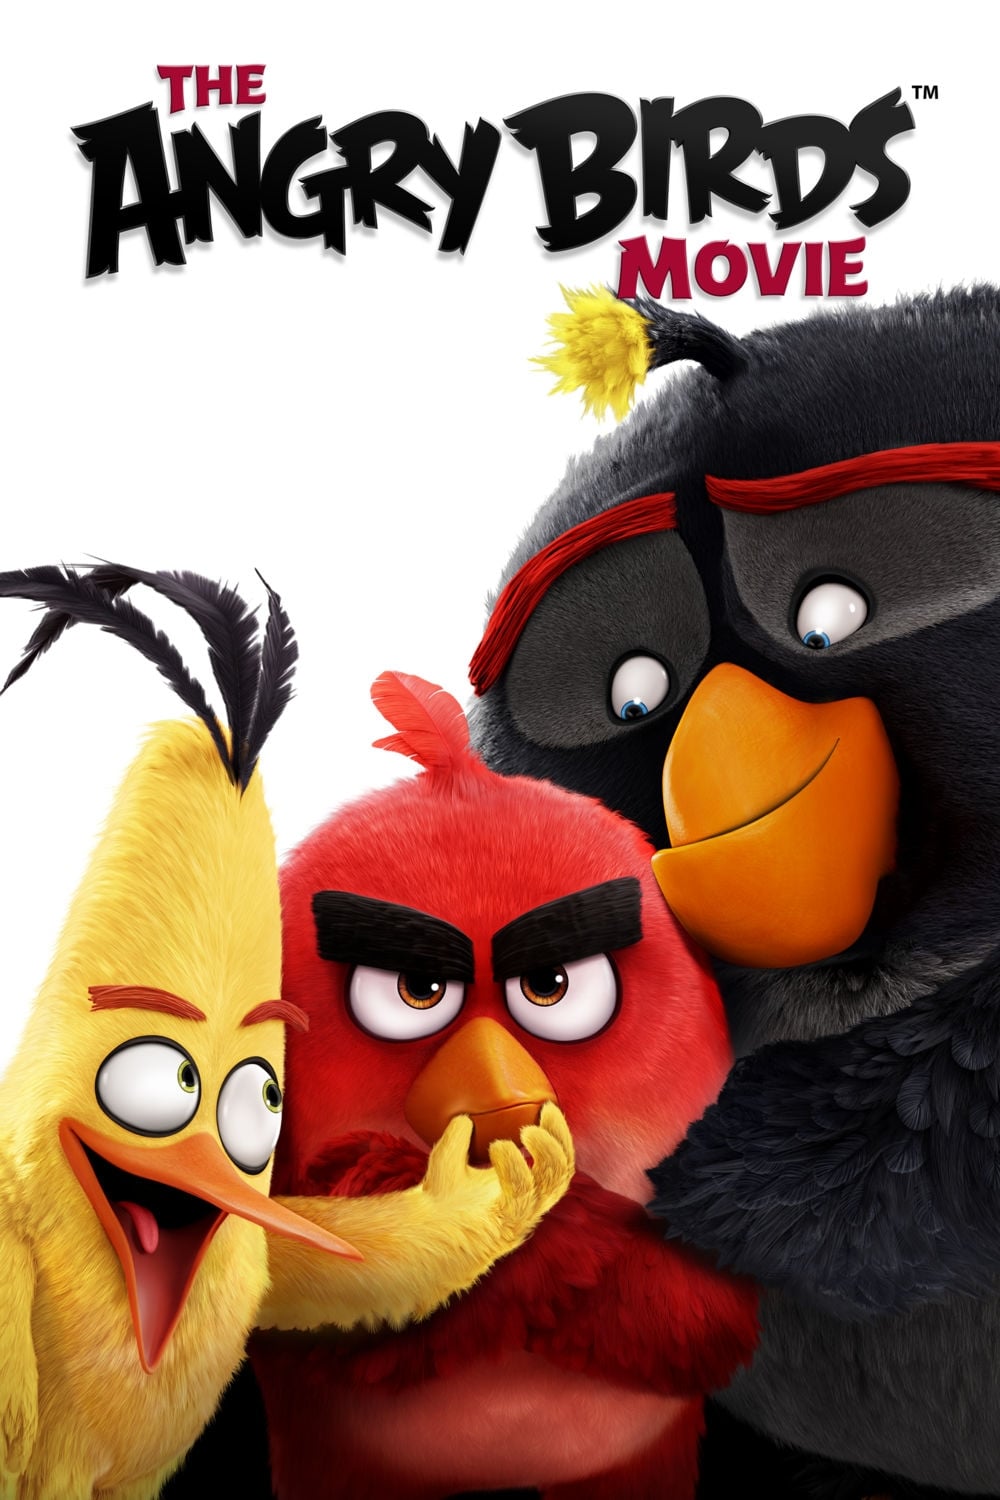 دانلود انیمیشن The Angry Birds Movie 2016 با دوبله فارسی